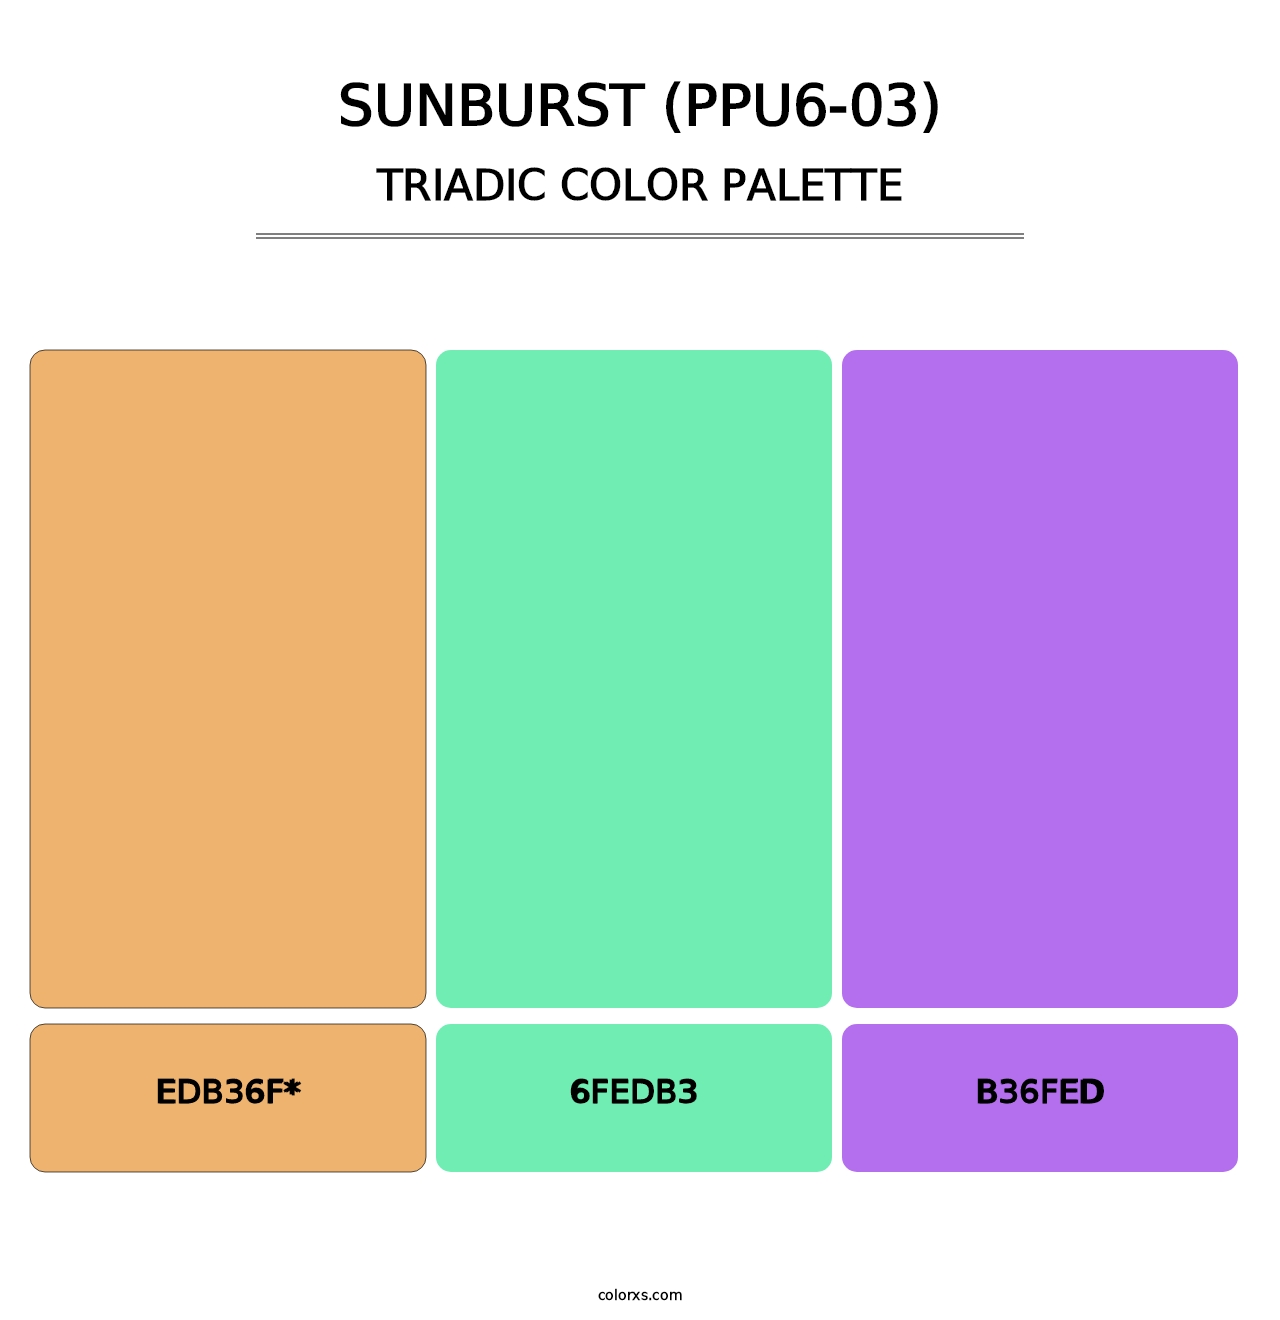 Sunburst (PPU6-03) - Triadic Color Palette